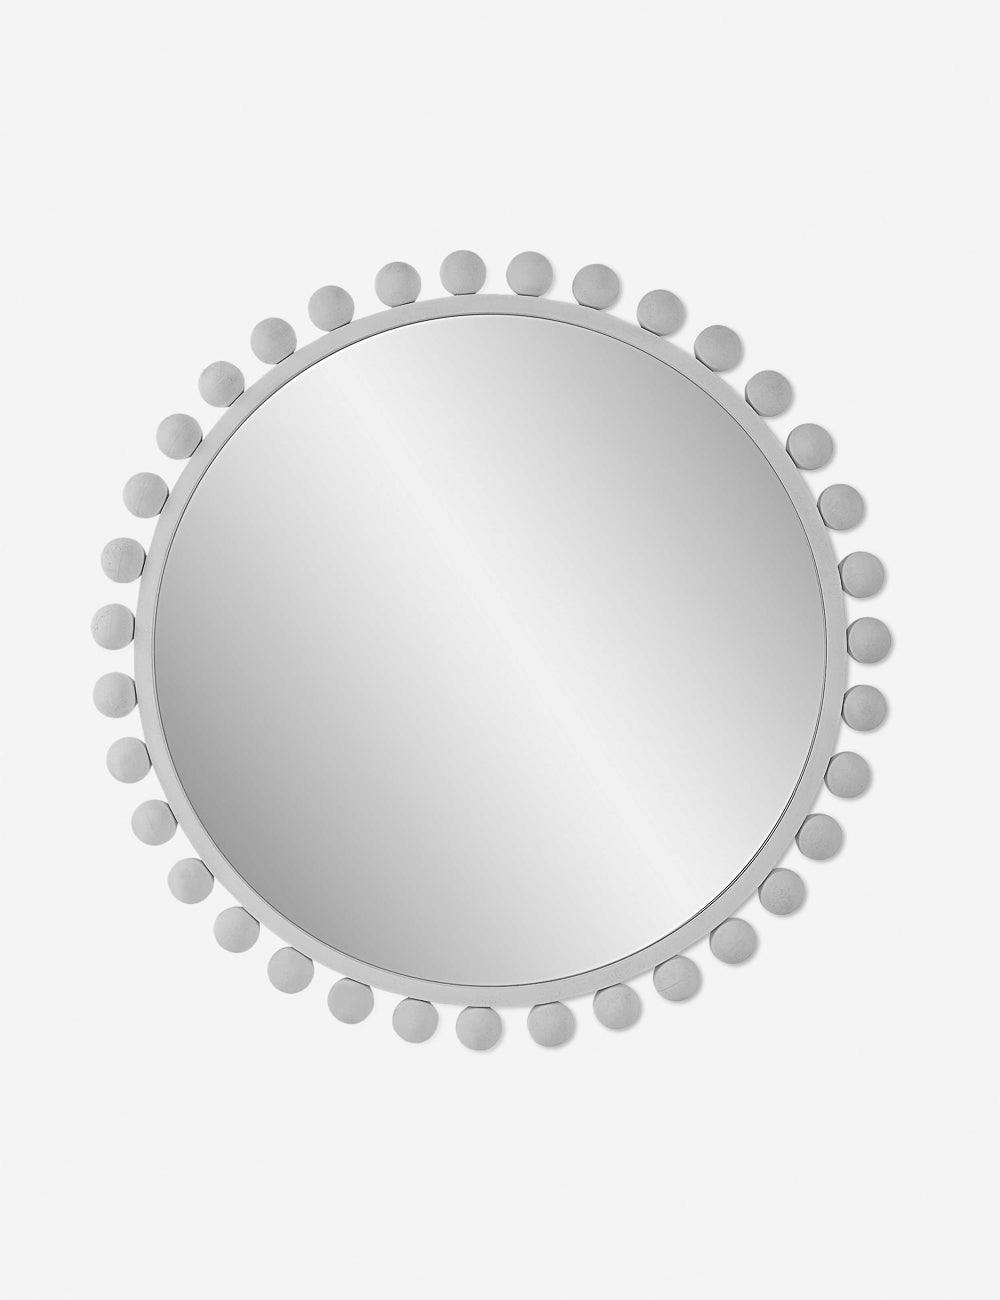 Megs White Round Wall Mirror